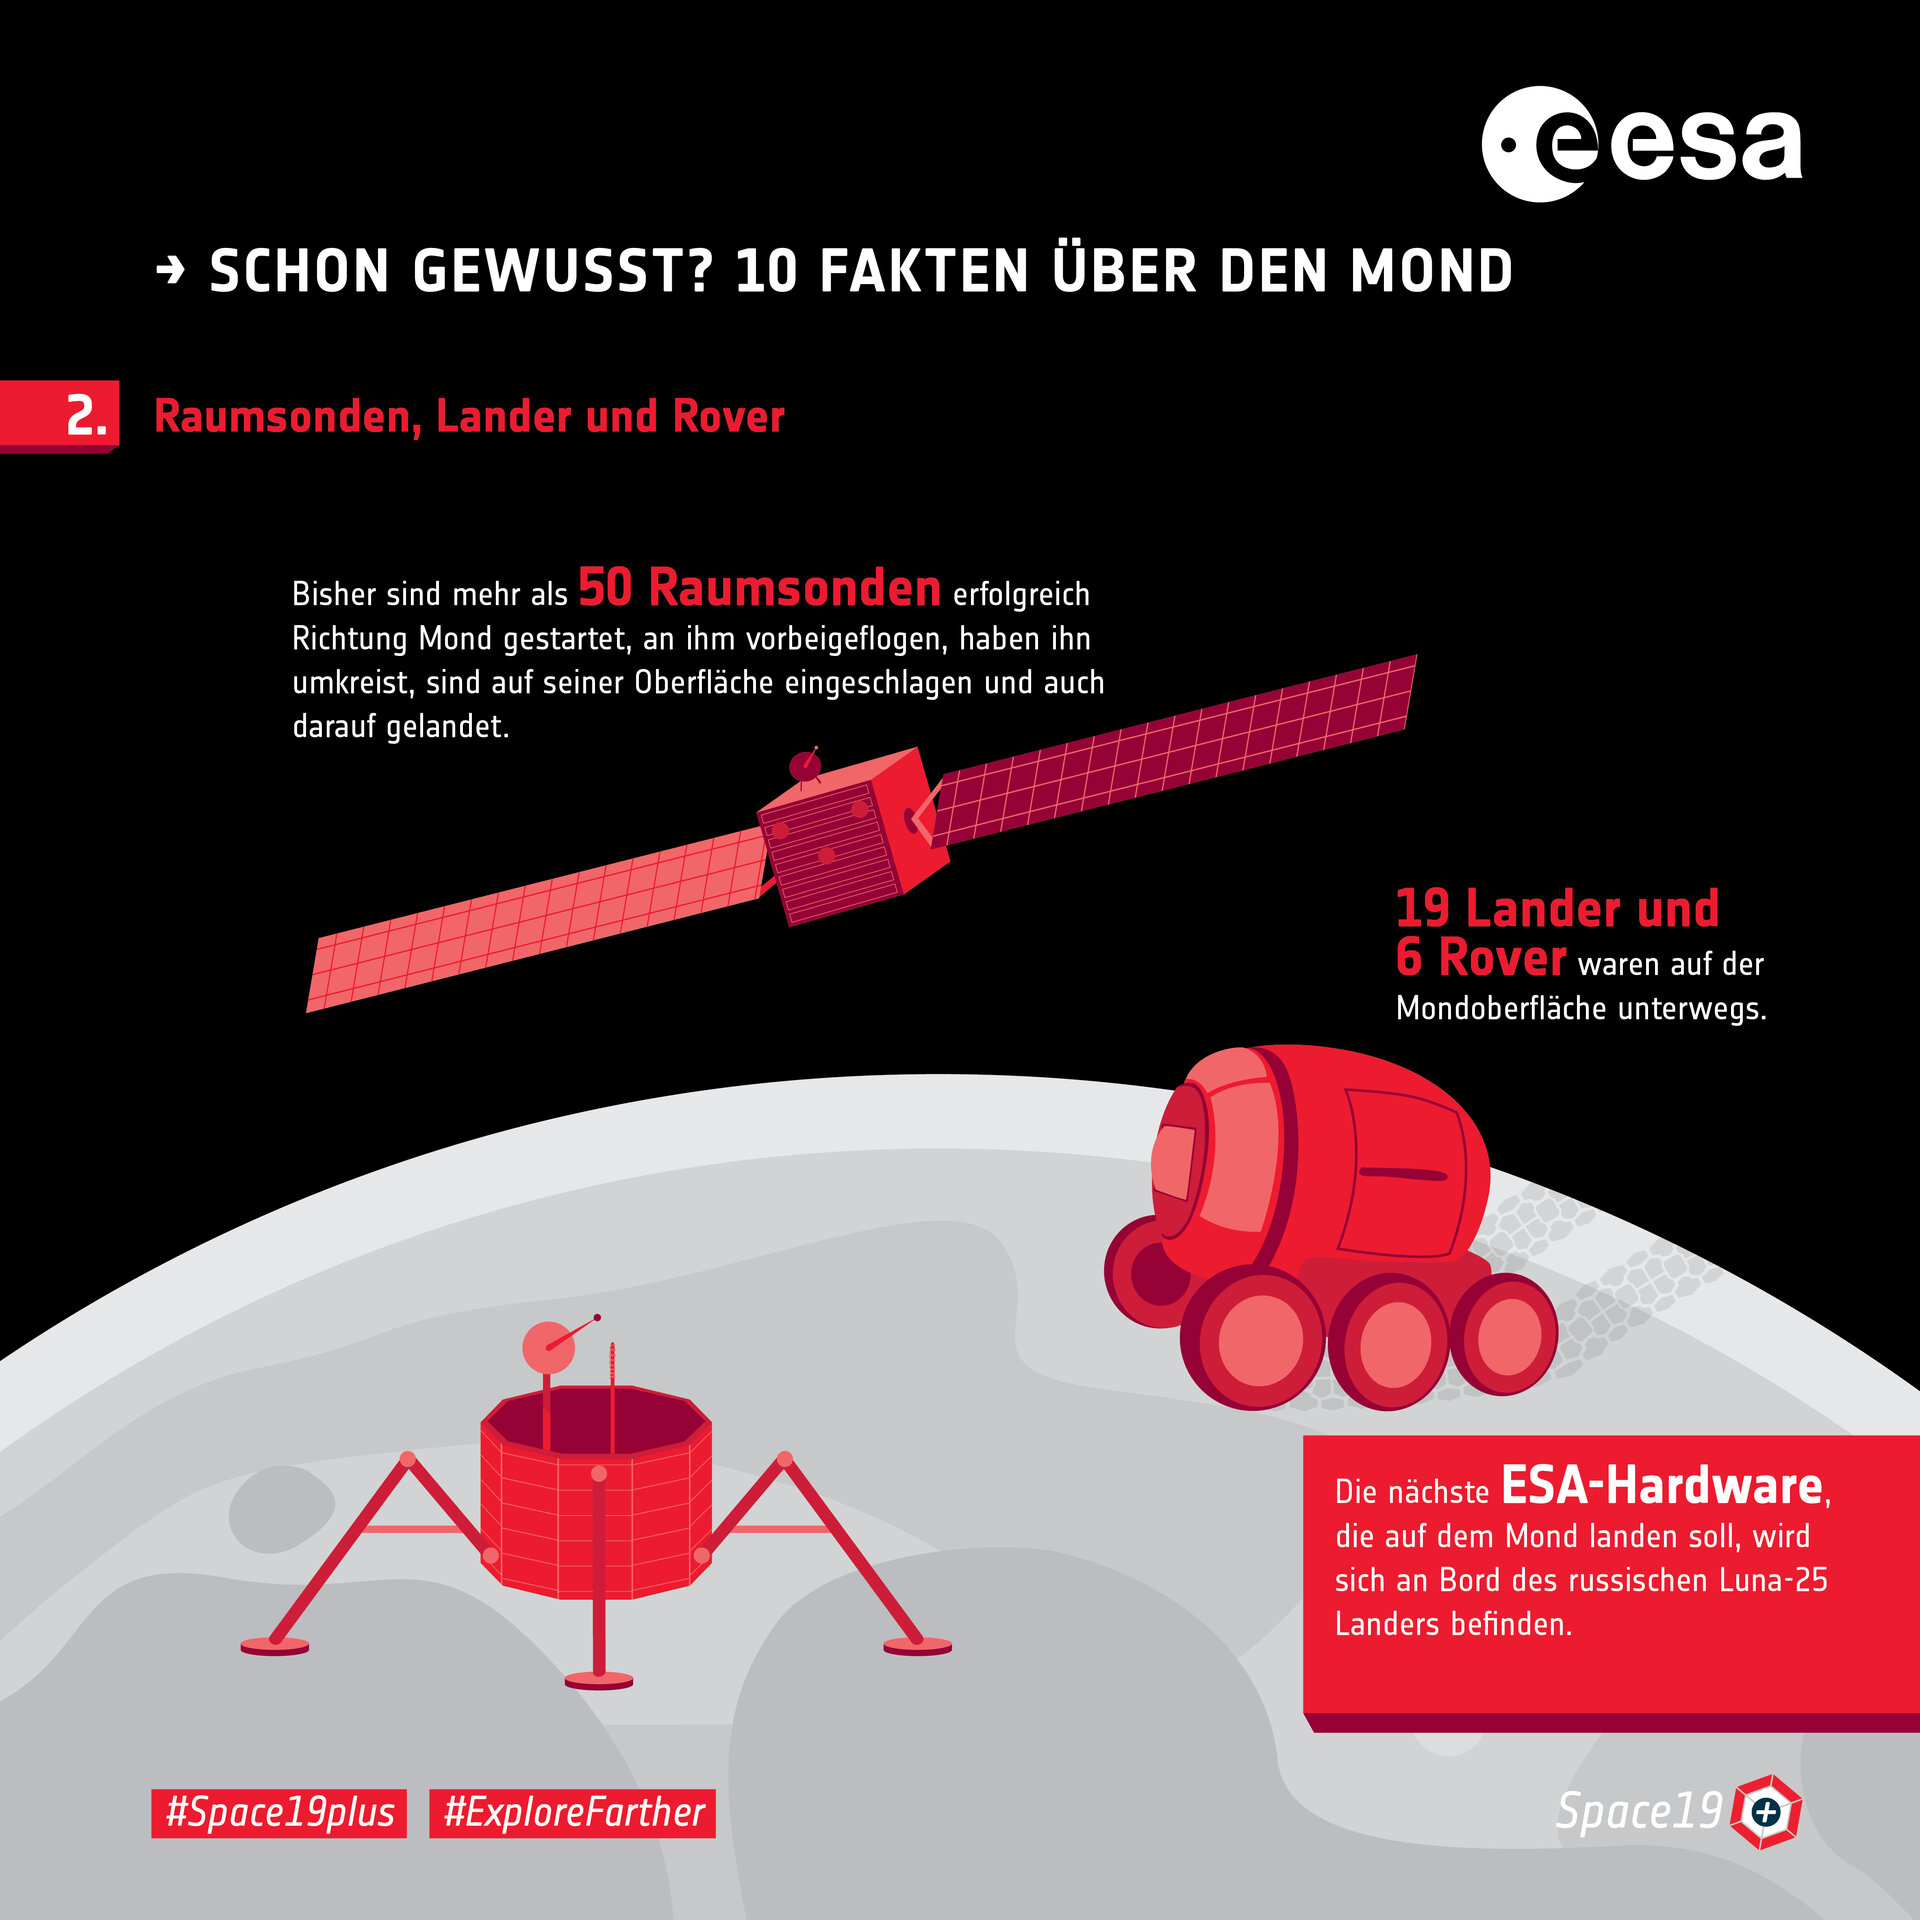 Schon gewusst? 10 Fakten über den Mond: 2. Raumsonden, Lander und Rover